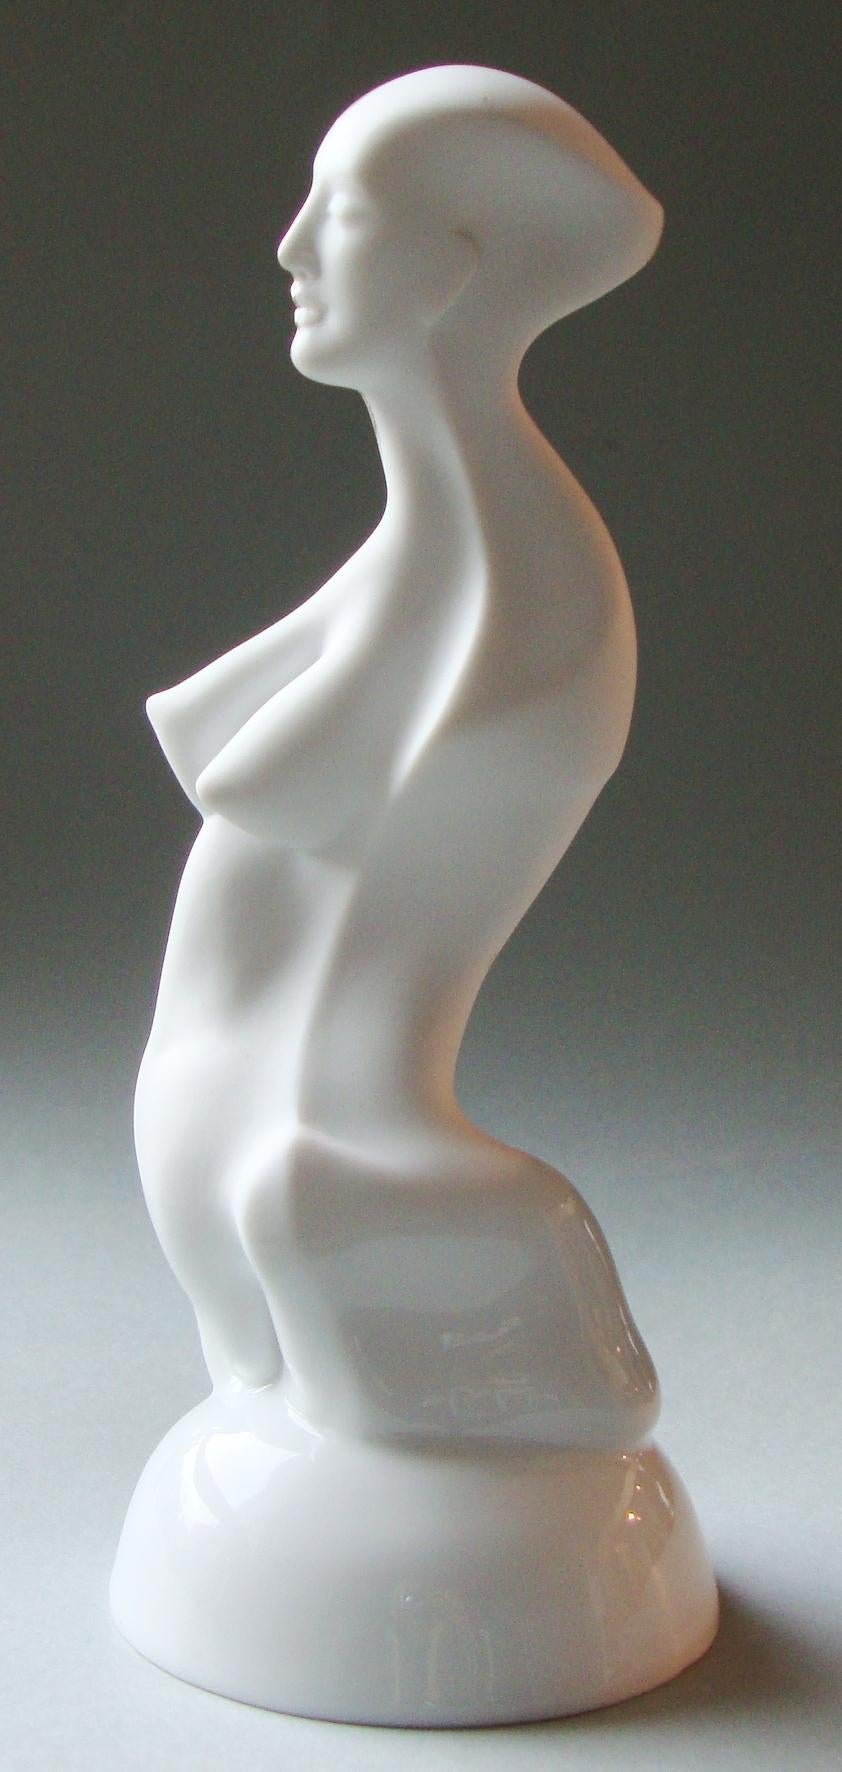 Ilona Romule Nude Sculpture – Frauenfigur auf einem Podest  Porzellan, Silber, H 20 cm